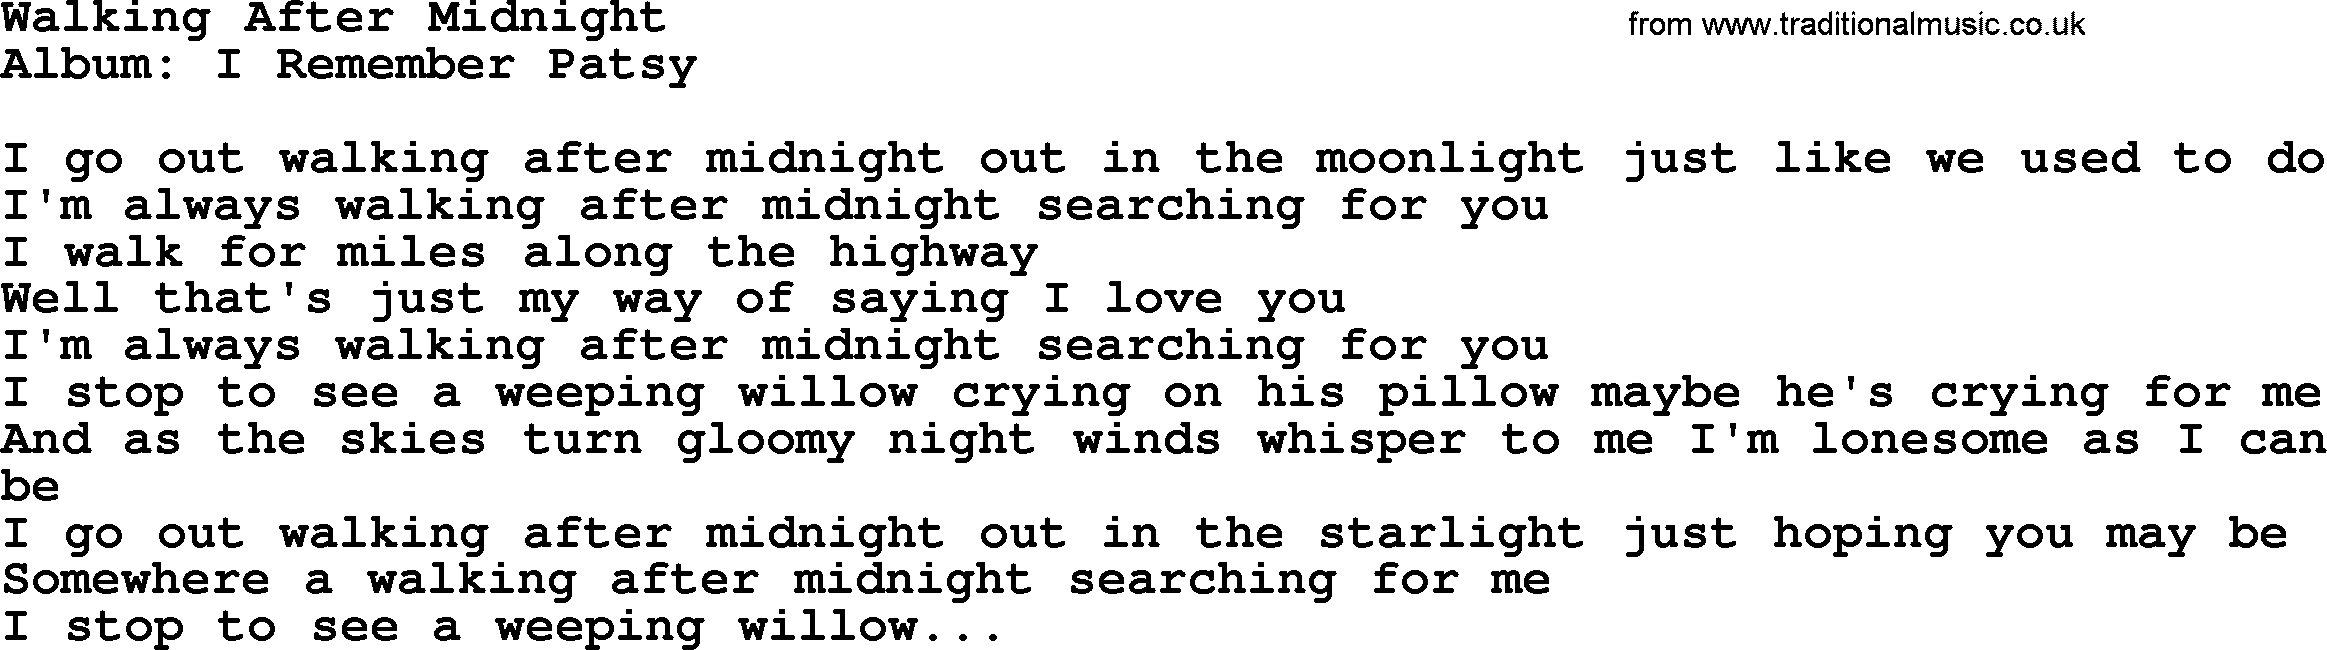 Loretta Lynn song: Walking After Midnight lyrics